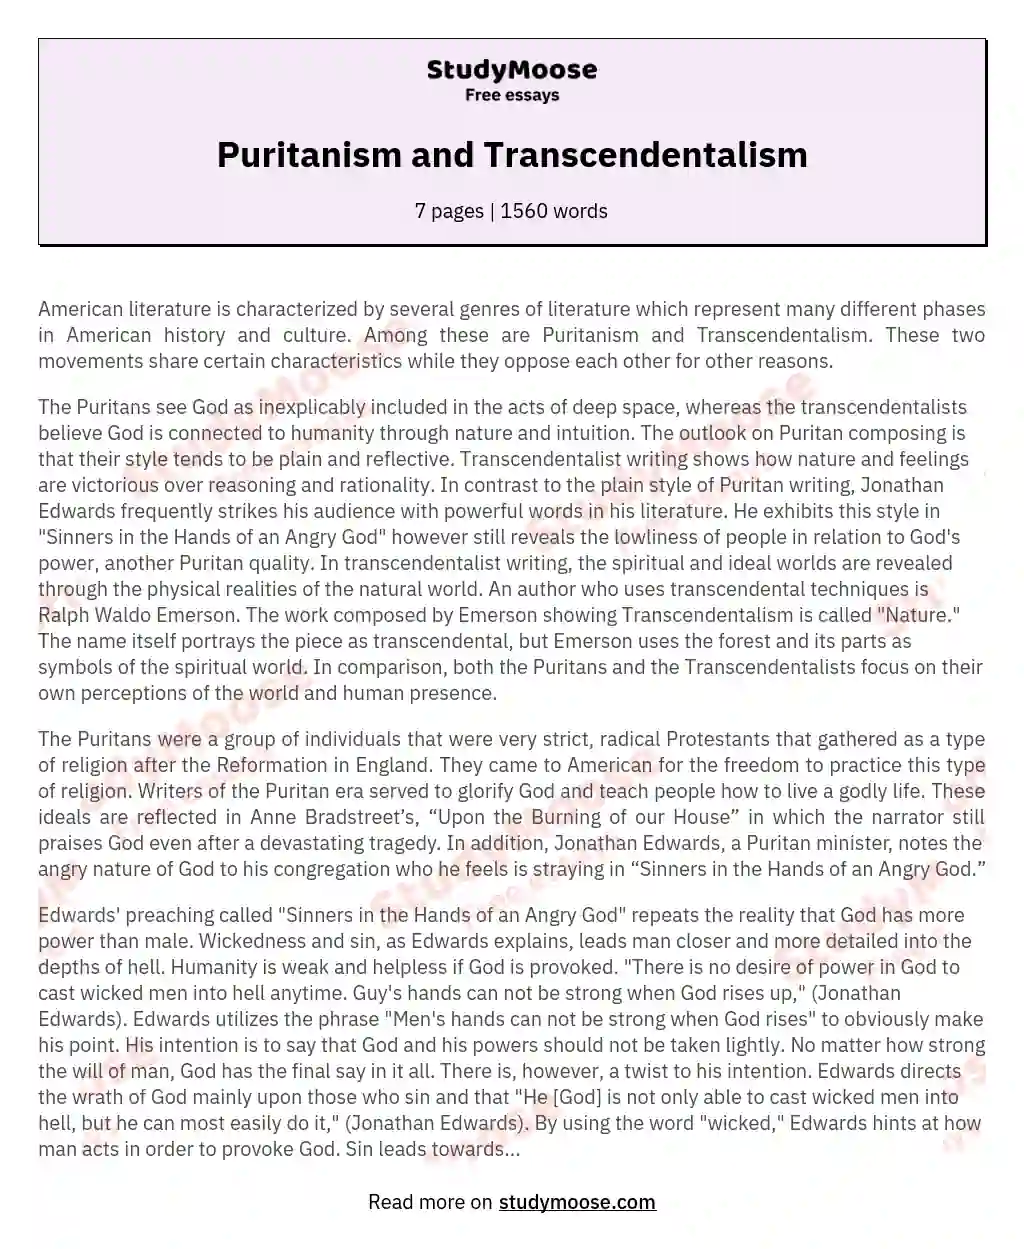 Puritanism and Transcendentalism essay